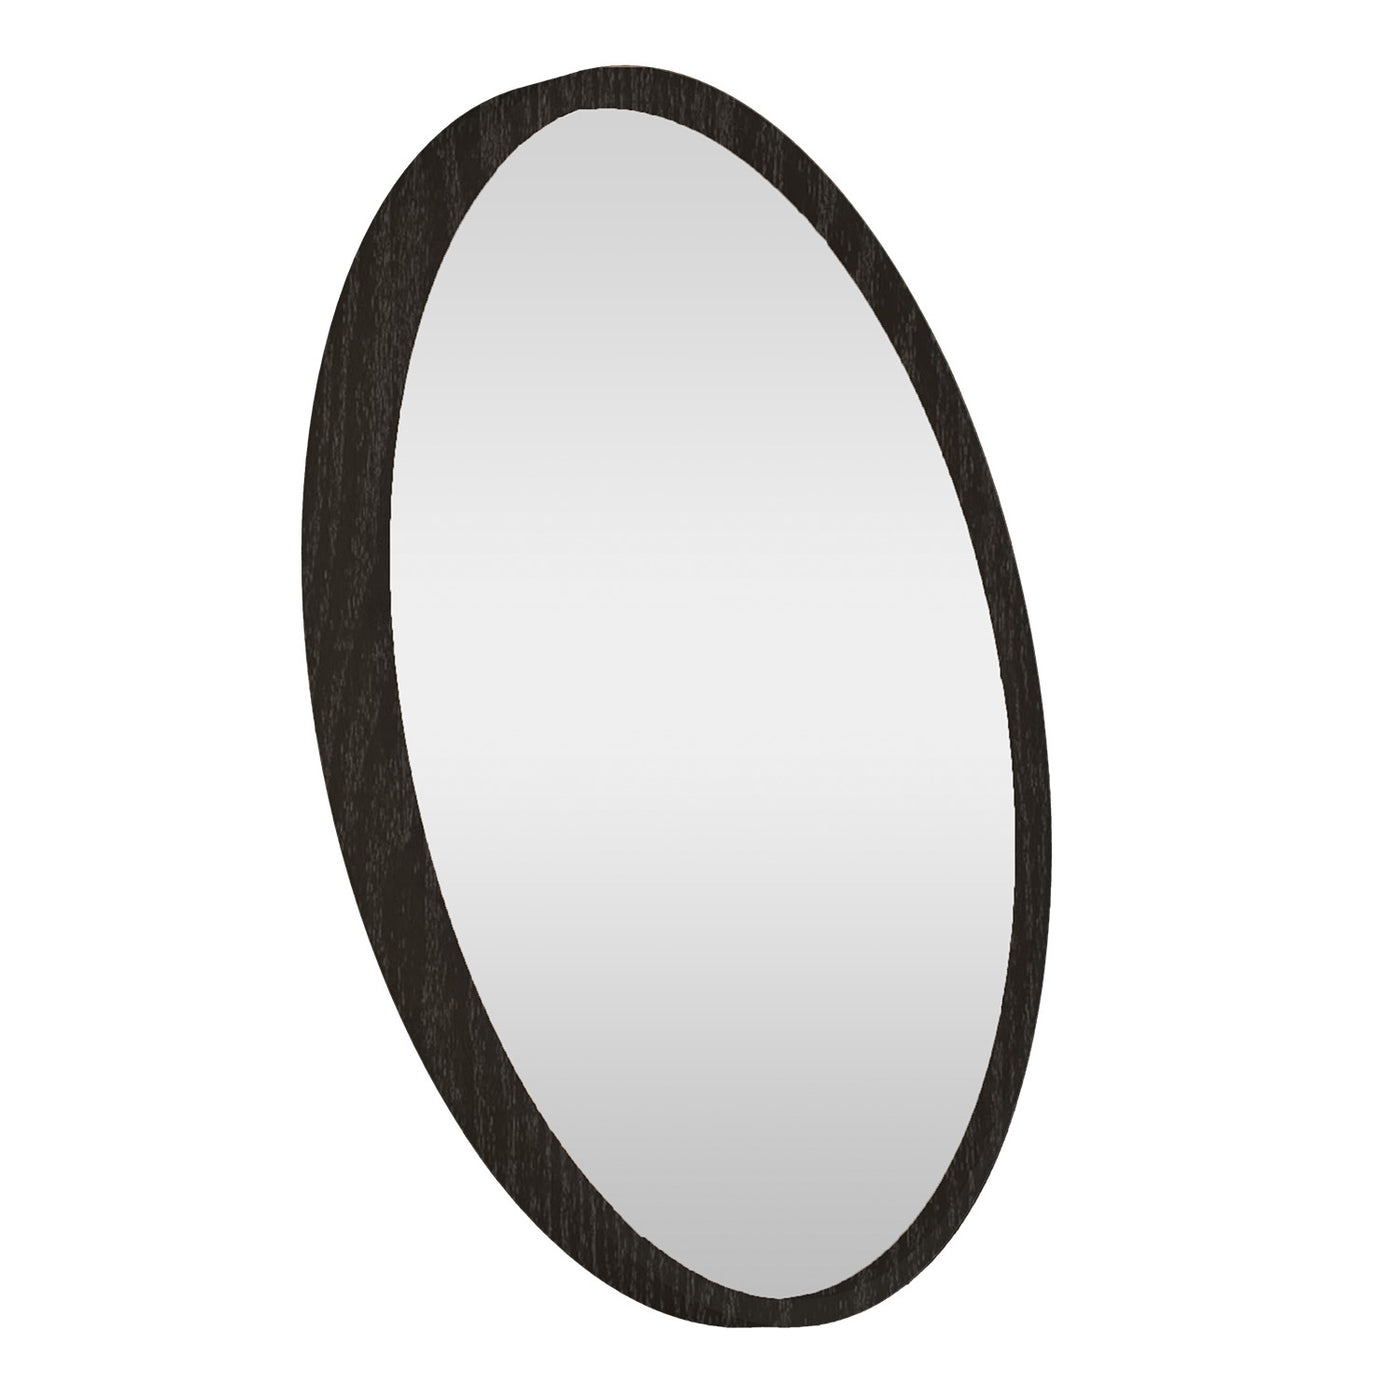 LUND black wall mirror 100cm